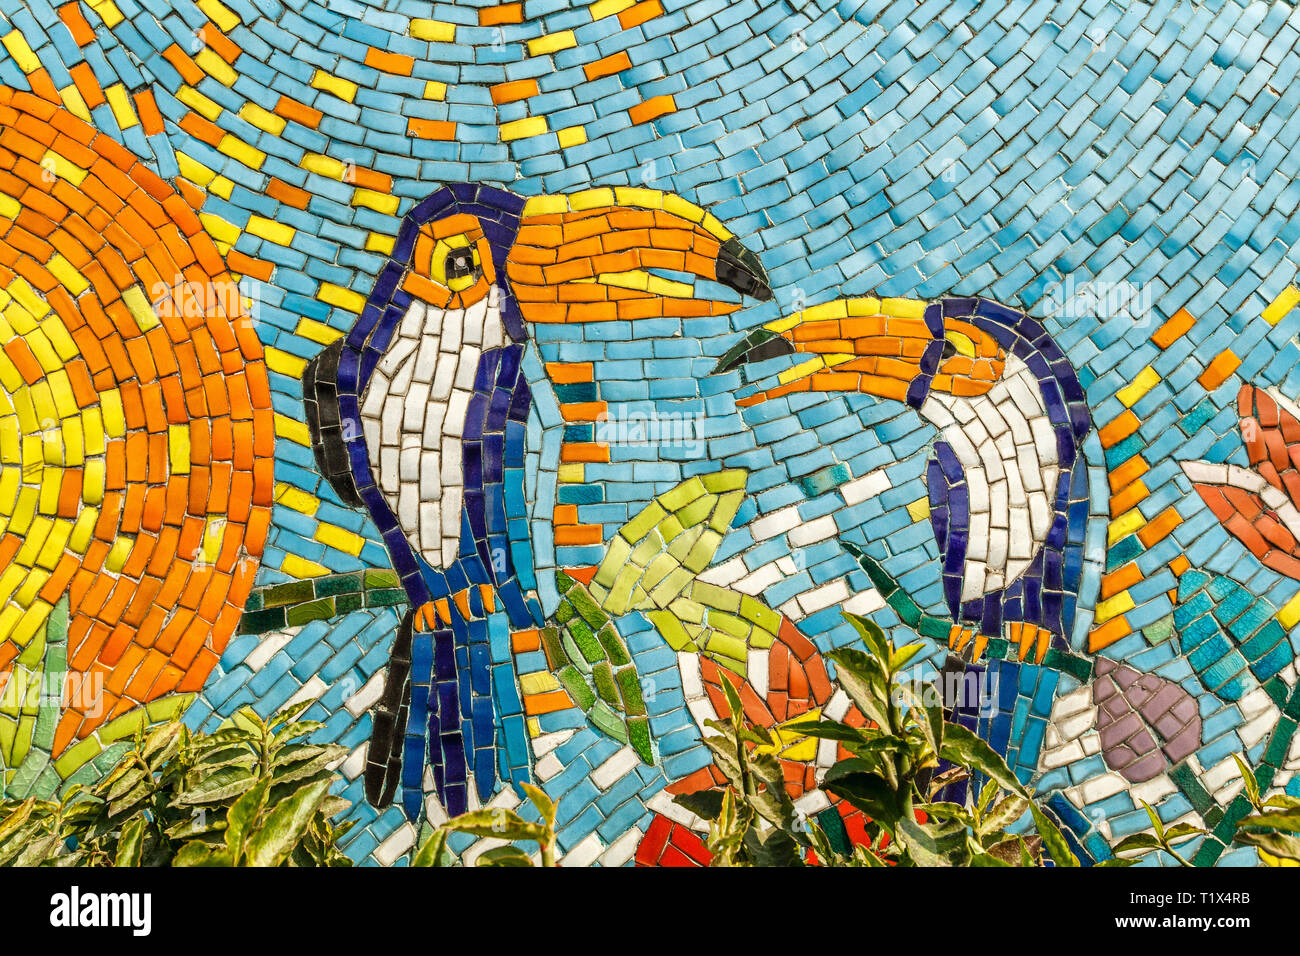 Hanoi Keramik Mosaik Wandbild oder Hanoi Keramik Straße. Vietnam. Mit zwei tropische Vögel. Die längste Keramische Wand in der Welt, Guinness Rekord. Stockfoto